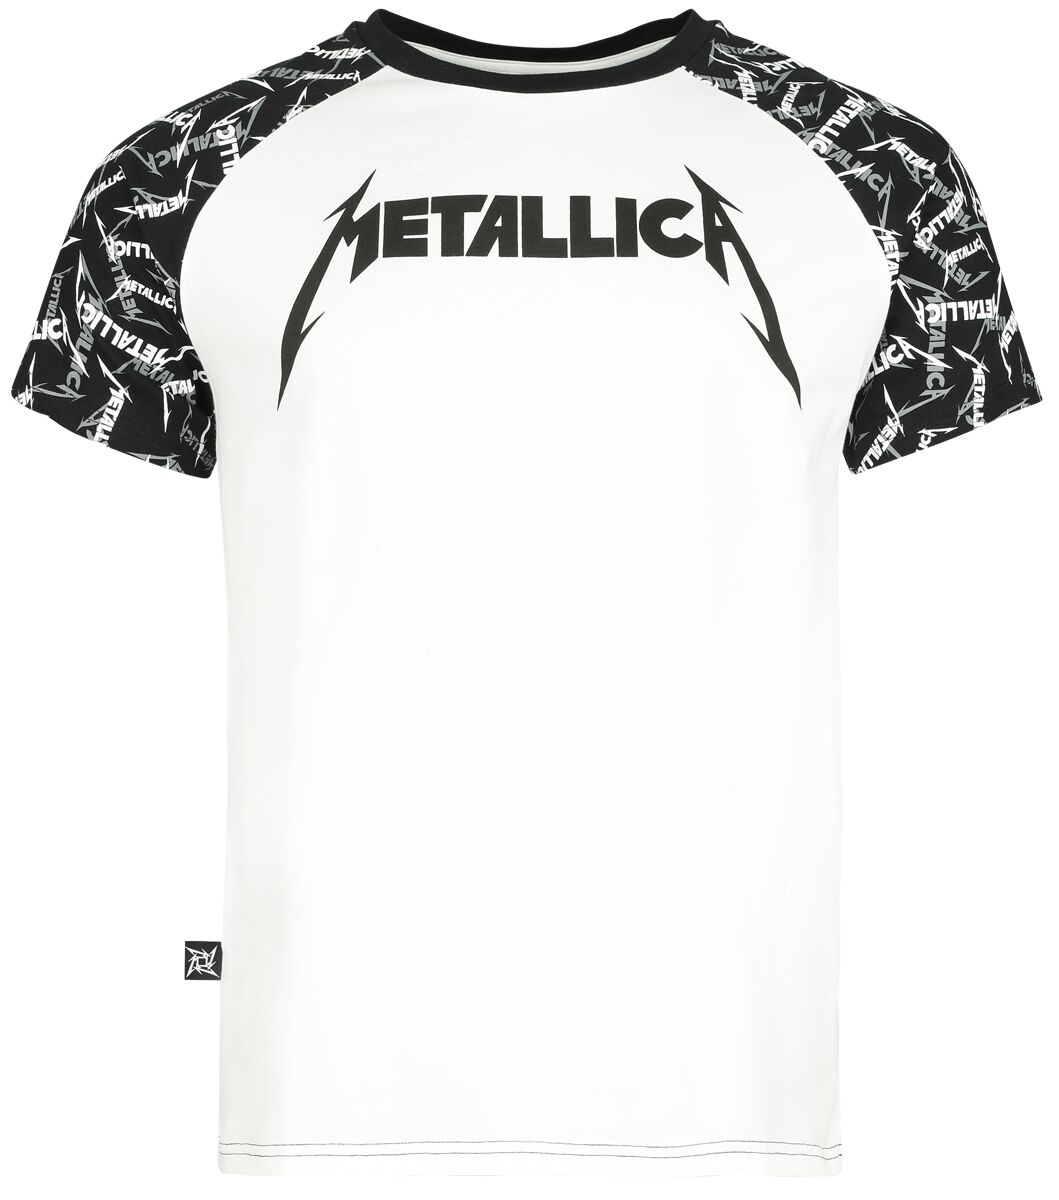 Metallica T-Shirt - EMP Signature Collection - S bis 5XL - für Männer - Größe 4XL - weiß/schwarz  - EMP exklusives Merchandise!